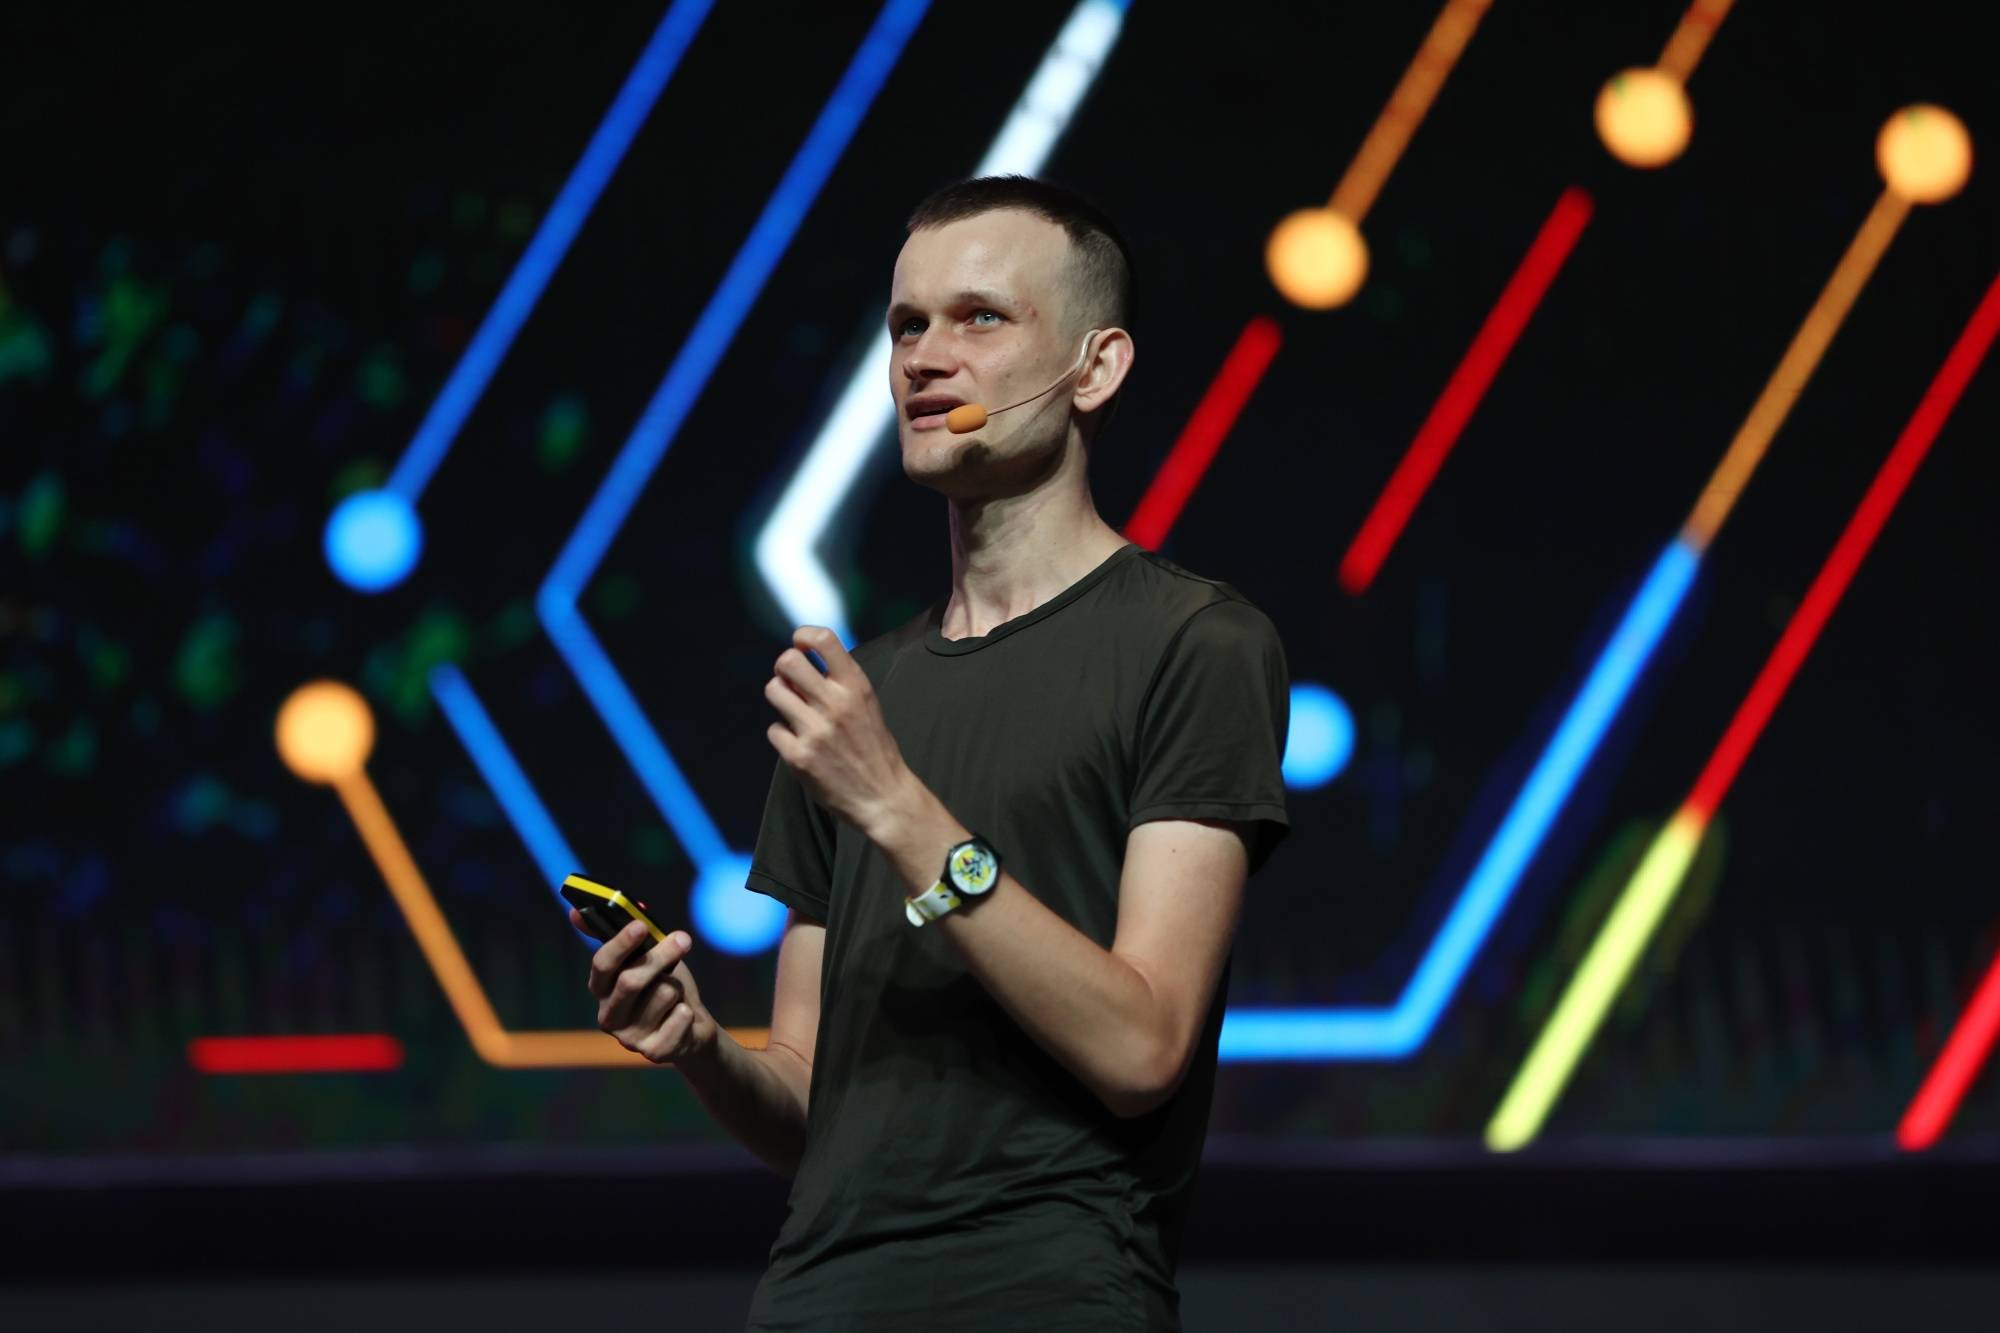 Vitalik Buterin kêu gọi cộng đồng Ethereum quay về với giá trị nguyên thủy. Ảnh: Bloomberg